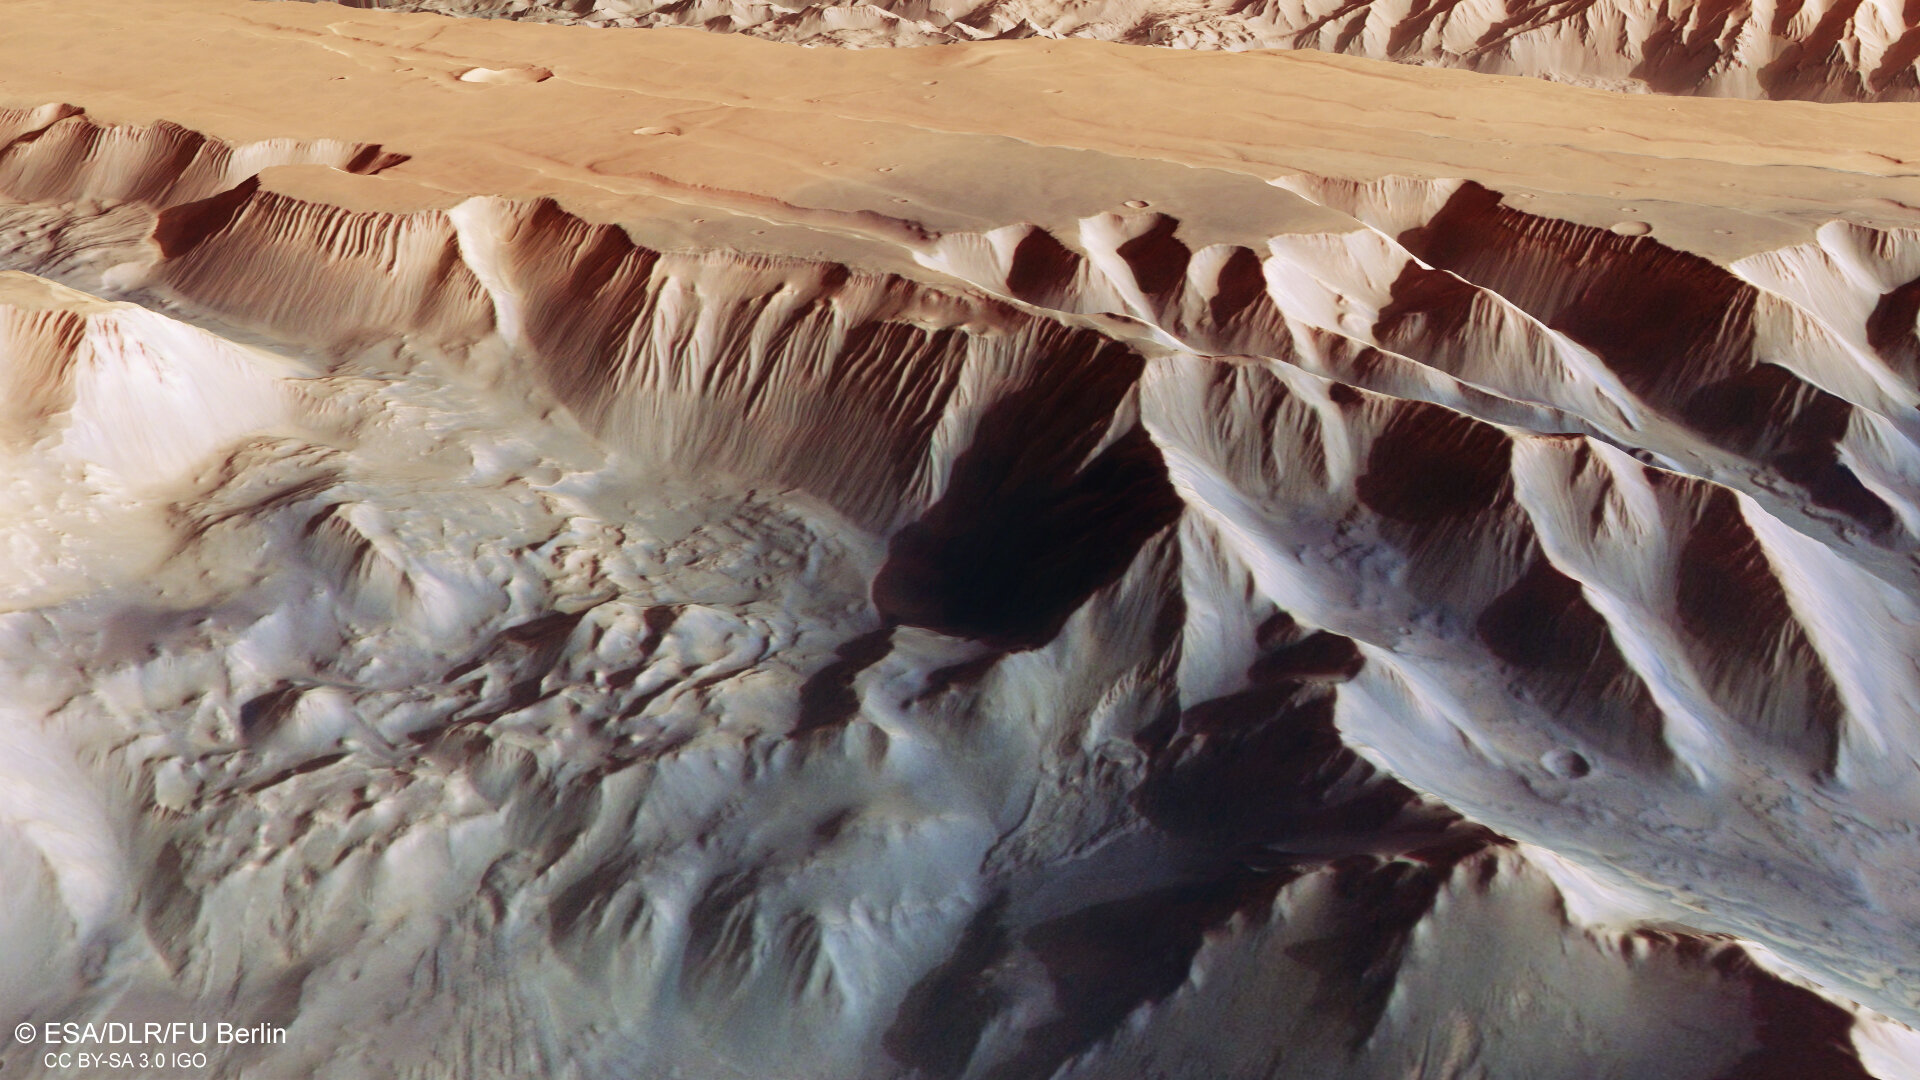 Ten przechylony widok perspektywiczny Chasmata titonium, które stanowi część struktury Valles Marineris na Marsie, został utworzony z cyfrowego modelu terenu, kanałów analogowych i kolorowych wysokiej rozdzielczości kamery stereo na pokładzie Mars Express Europejskiej Agencji Kosmicznej.